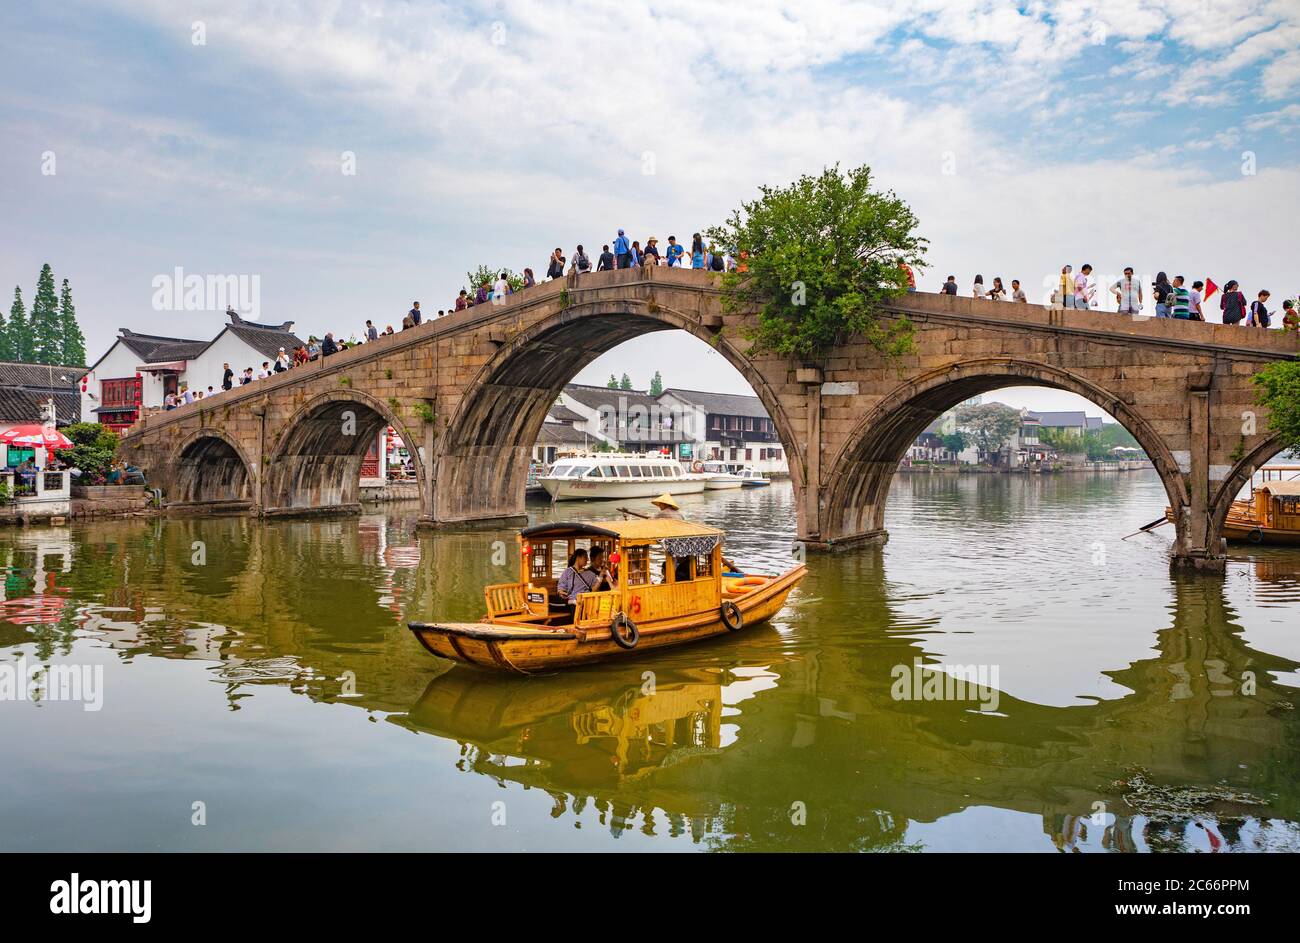 China, Shanghai, Zhujiajiaozhen City, canal Stock Photo